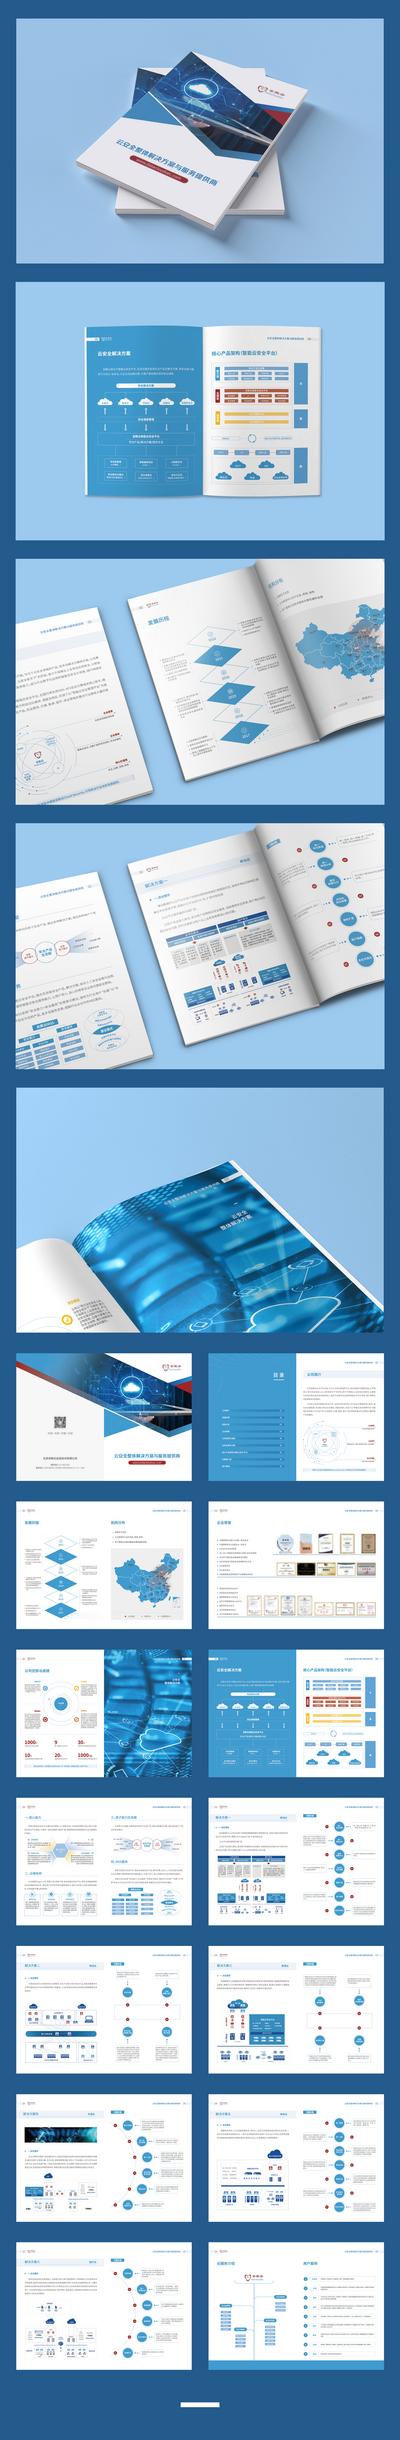 【南门网】画册 宣传册 企业 科技 大数据 云计算 图表 版式 大气 简约 蓝色